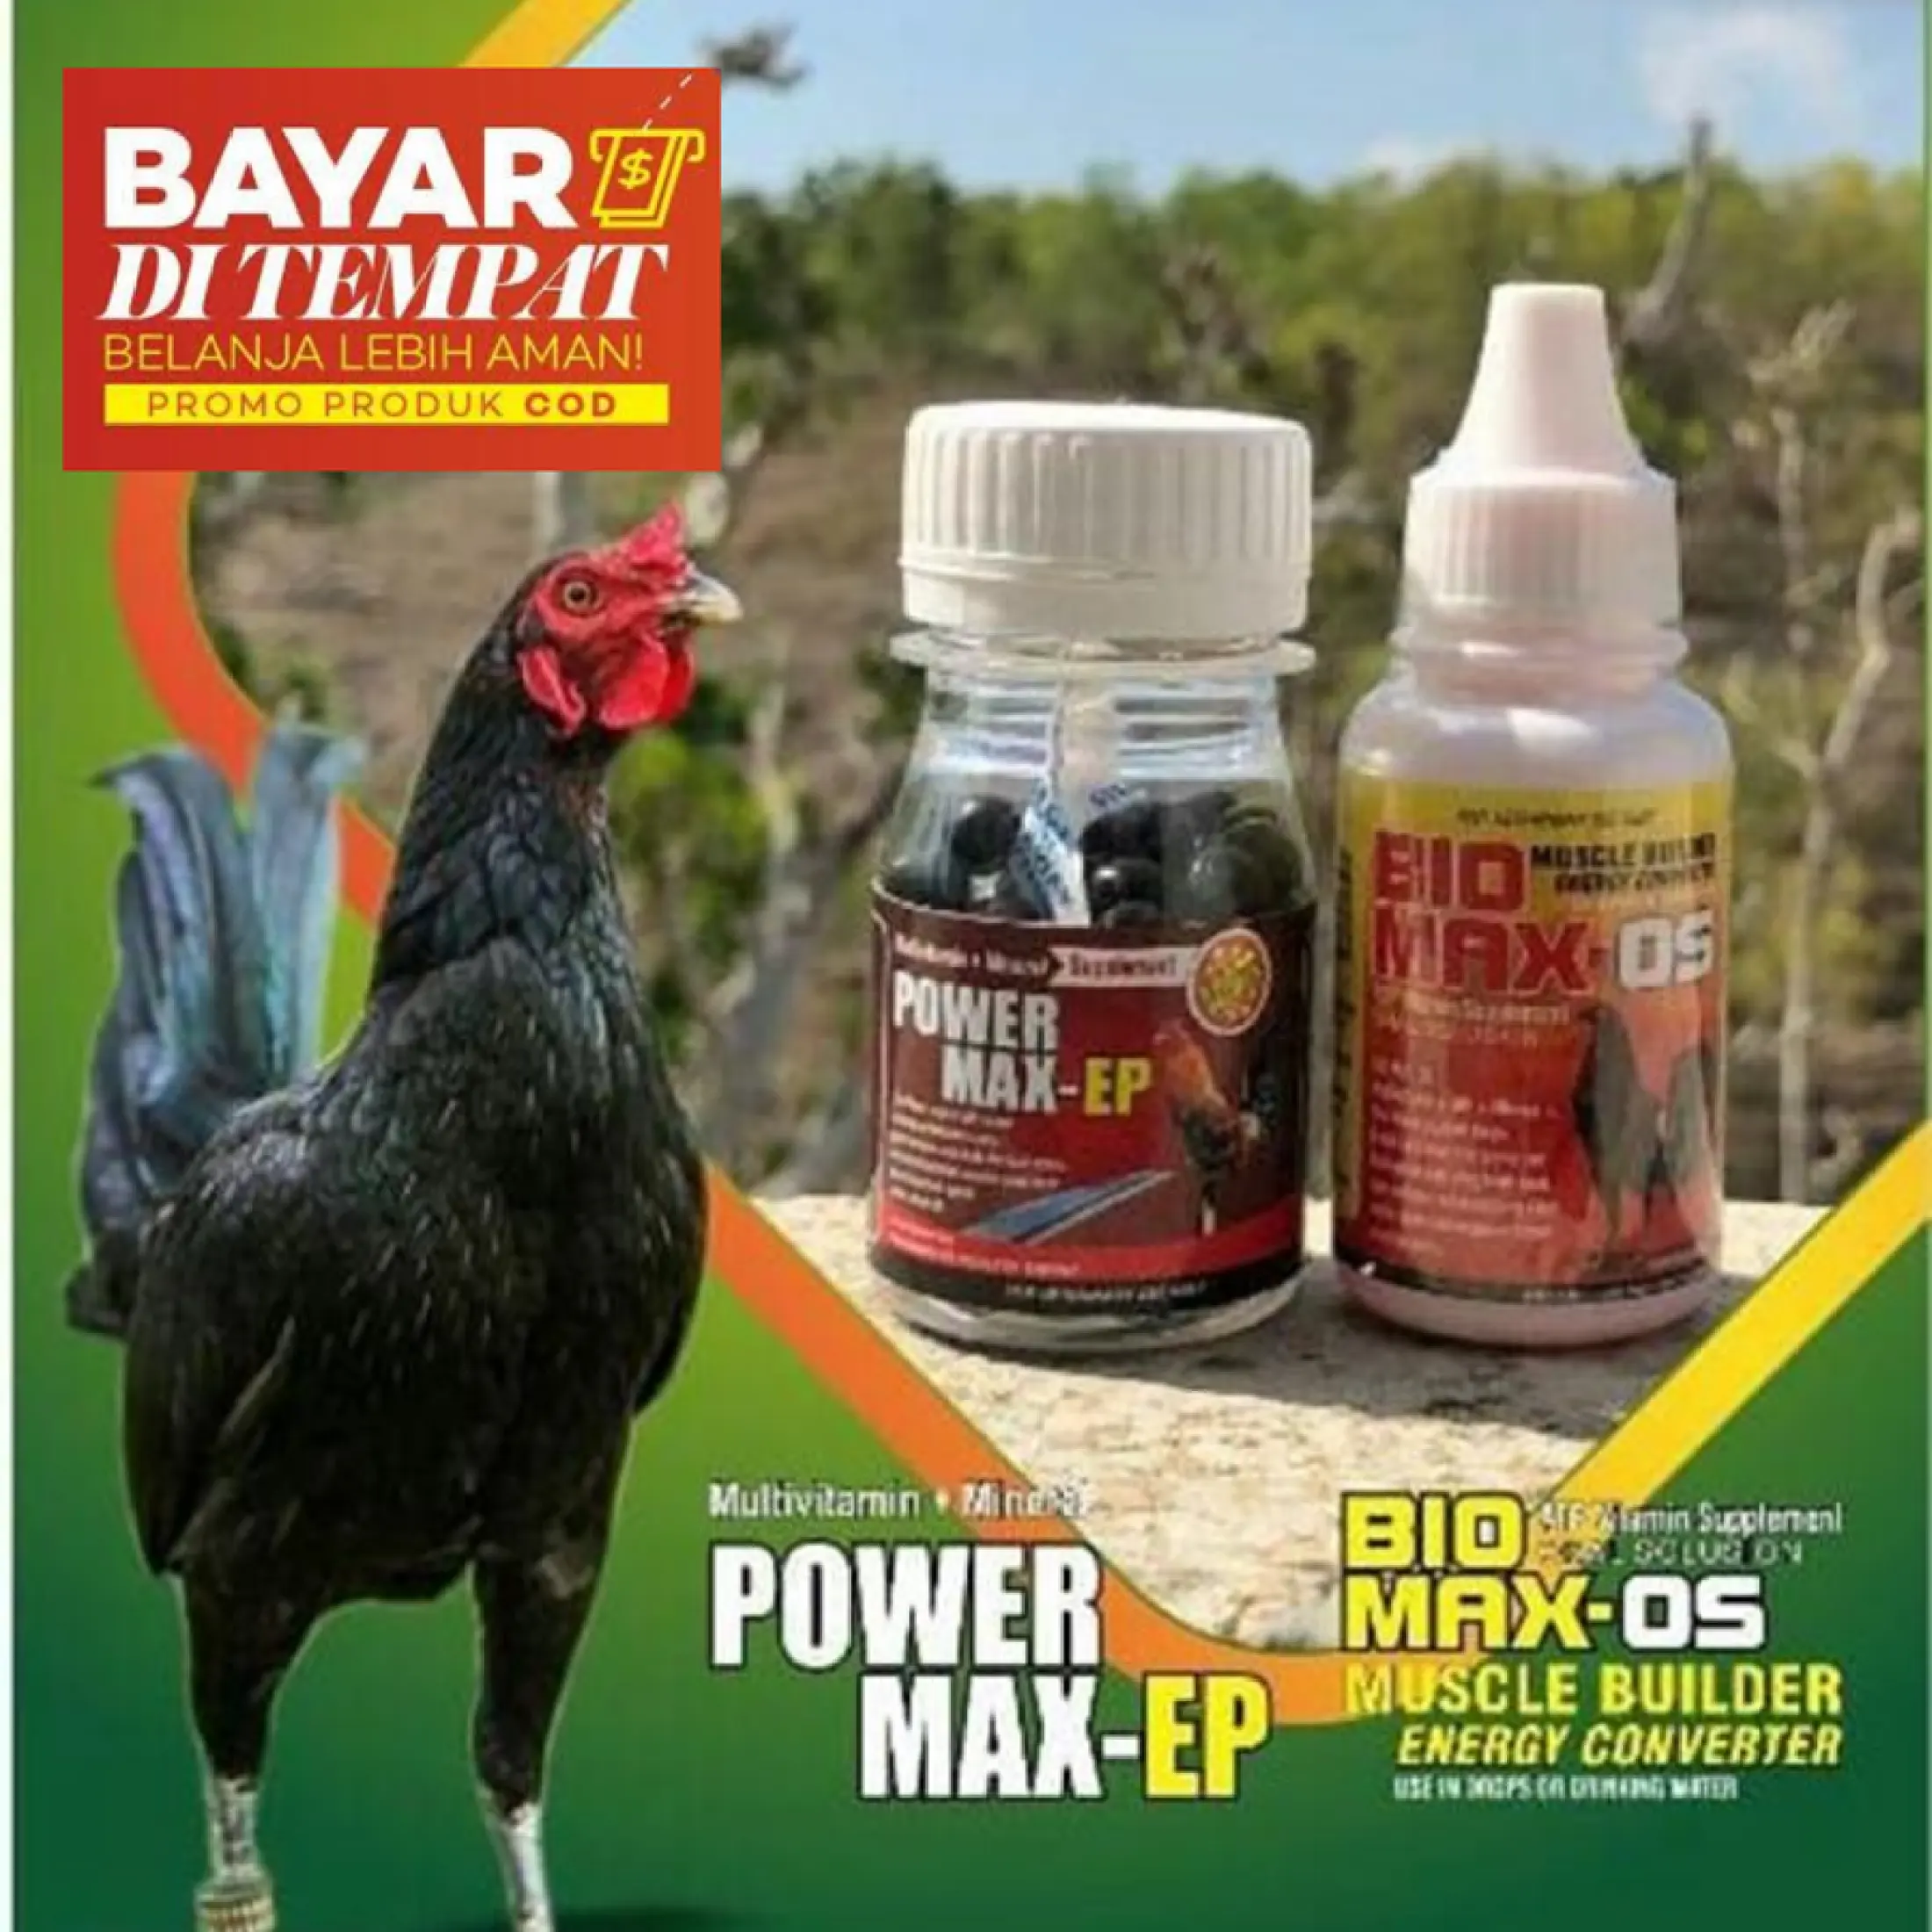 Bang At Producttion Doping Ayam Aduan Power Max Ep Dan Biomax Os Lazada Indonesia